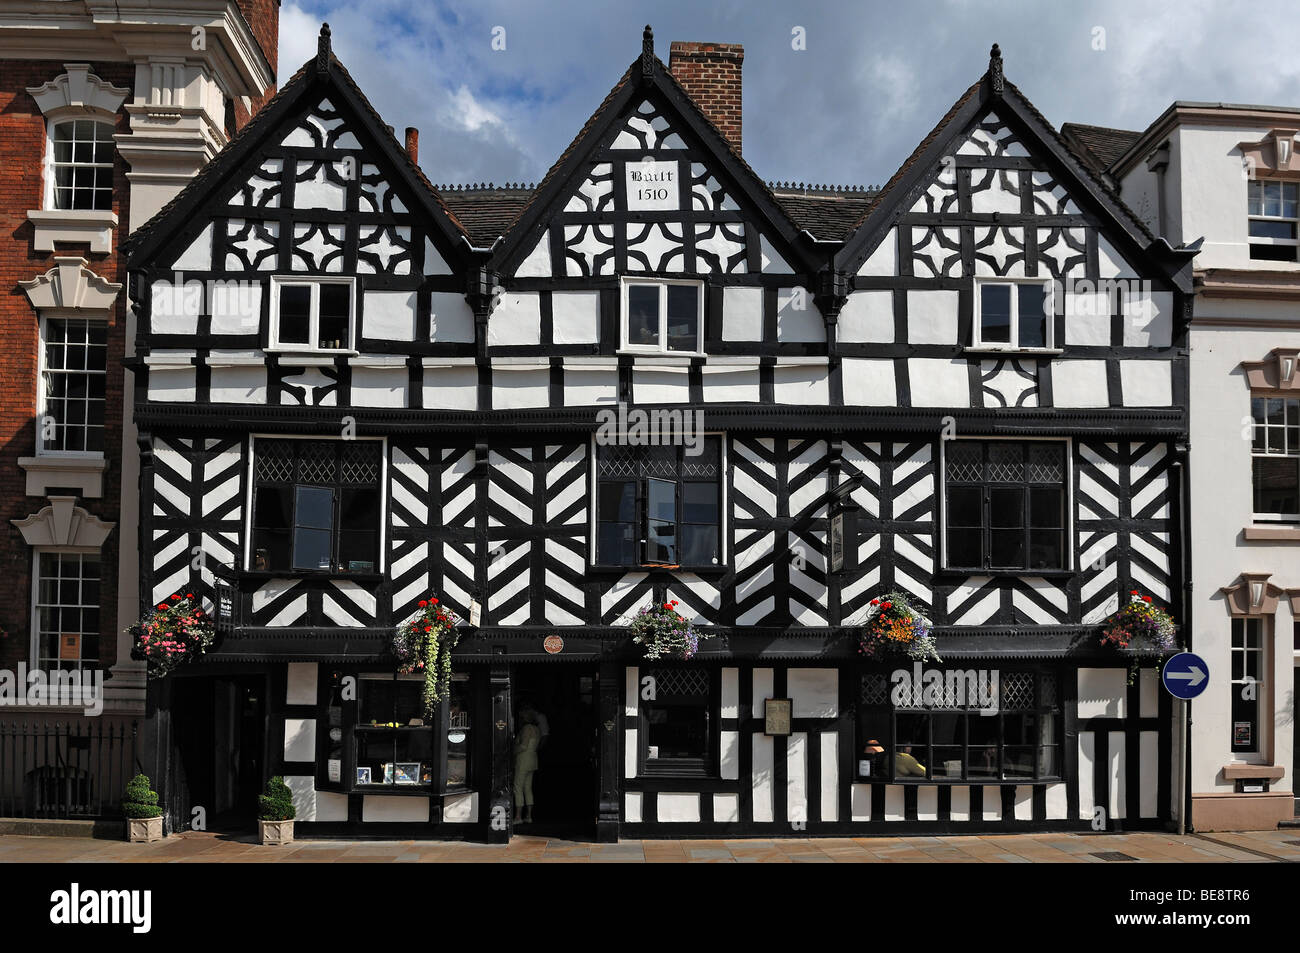 Vieille maison à colombages de style Tudor house, 1510, rue de l'alésage, Staffordshire, Lichfield, Angleterre, Royaume-Uni, Europe Banque D'Images